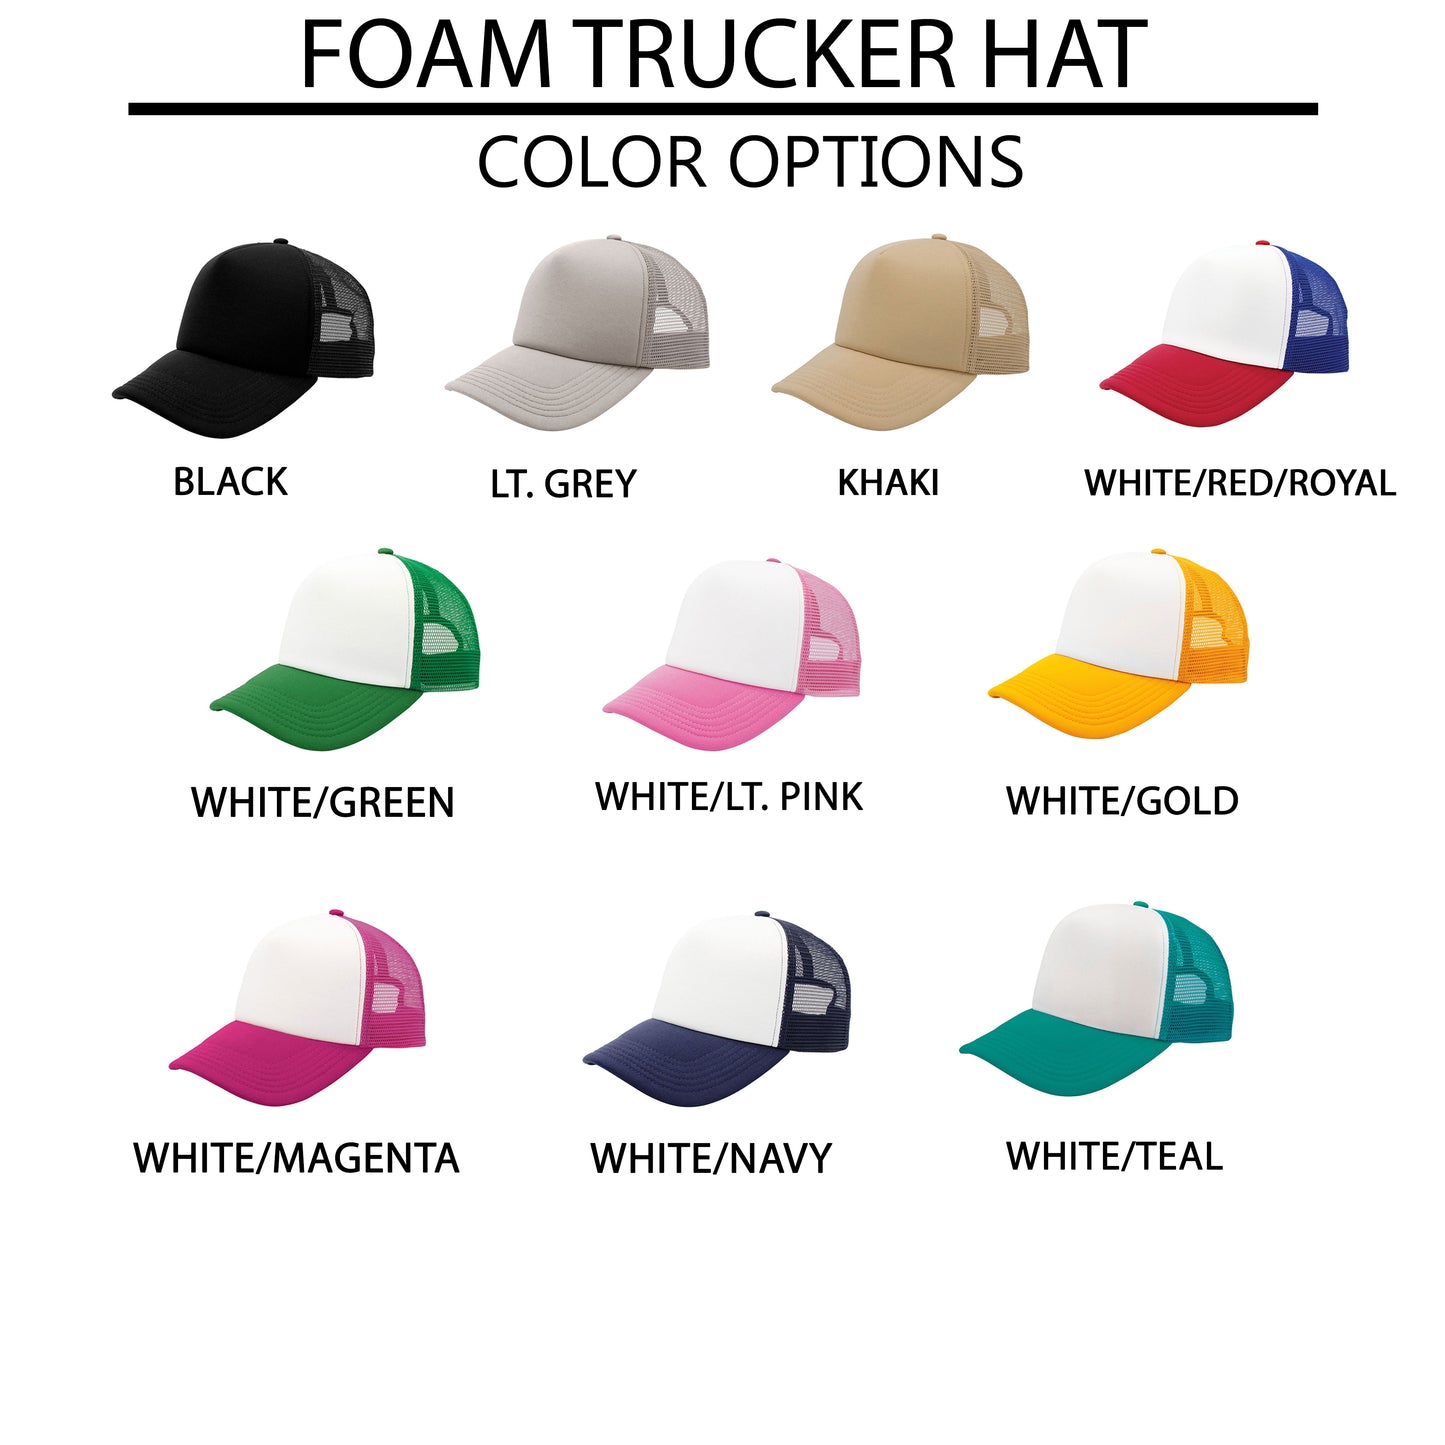 Only Talking To Jesus Today | Foam Trucker Hat